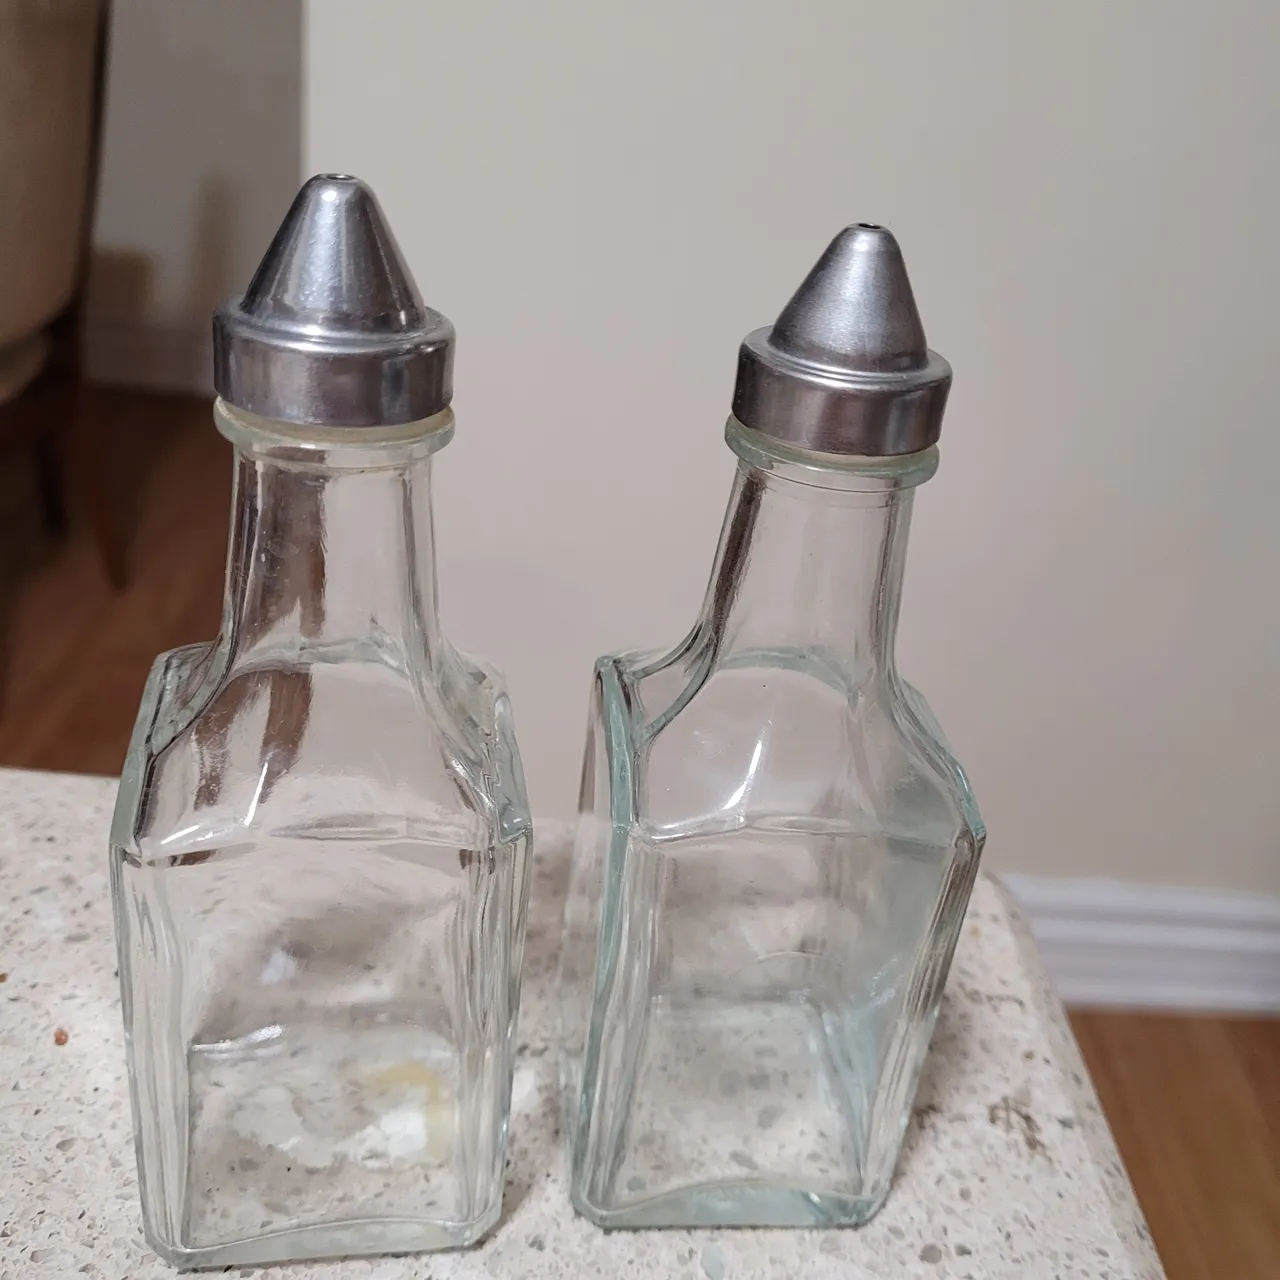 Oil and vinegar bottle set photo 1